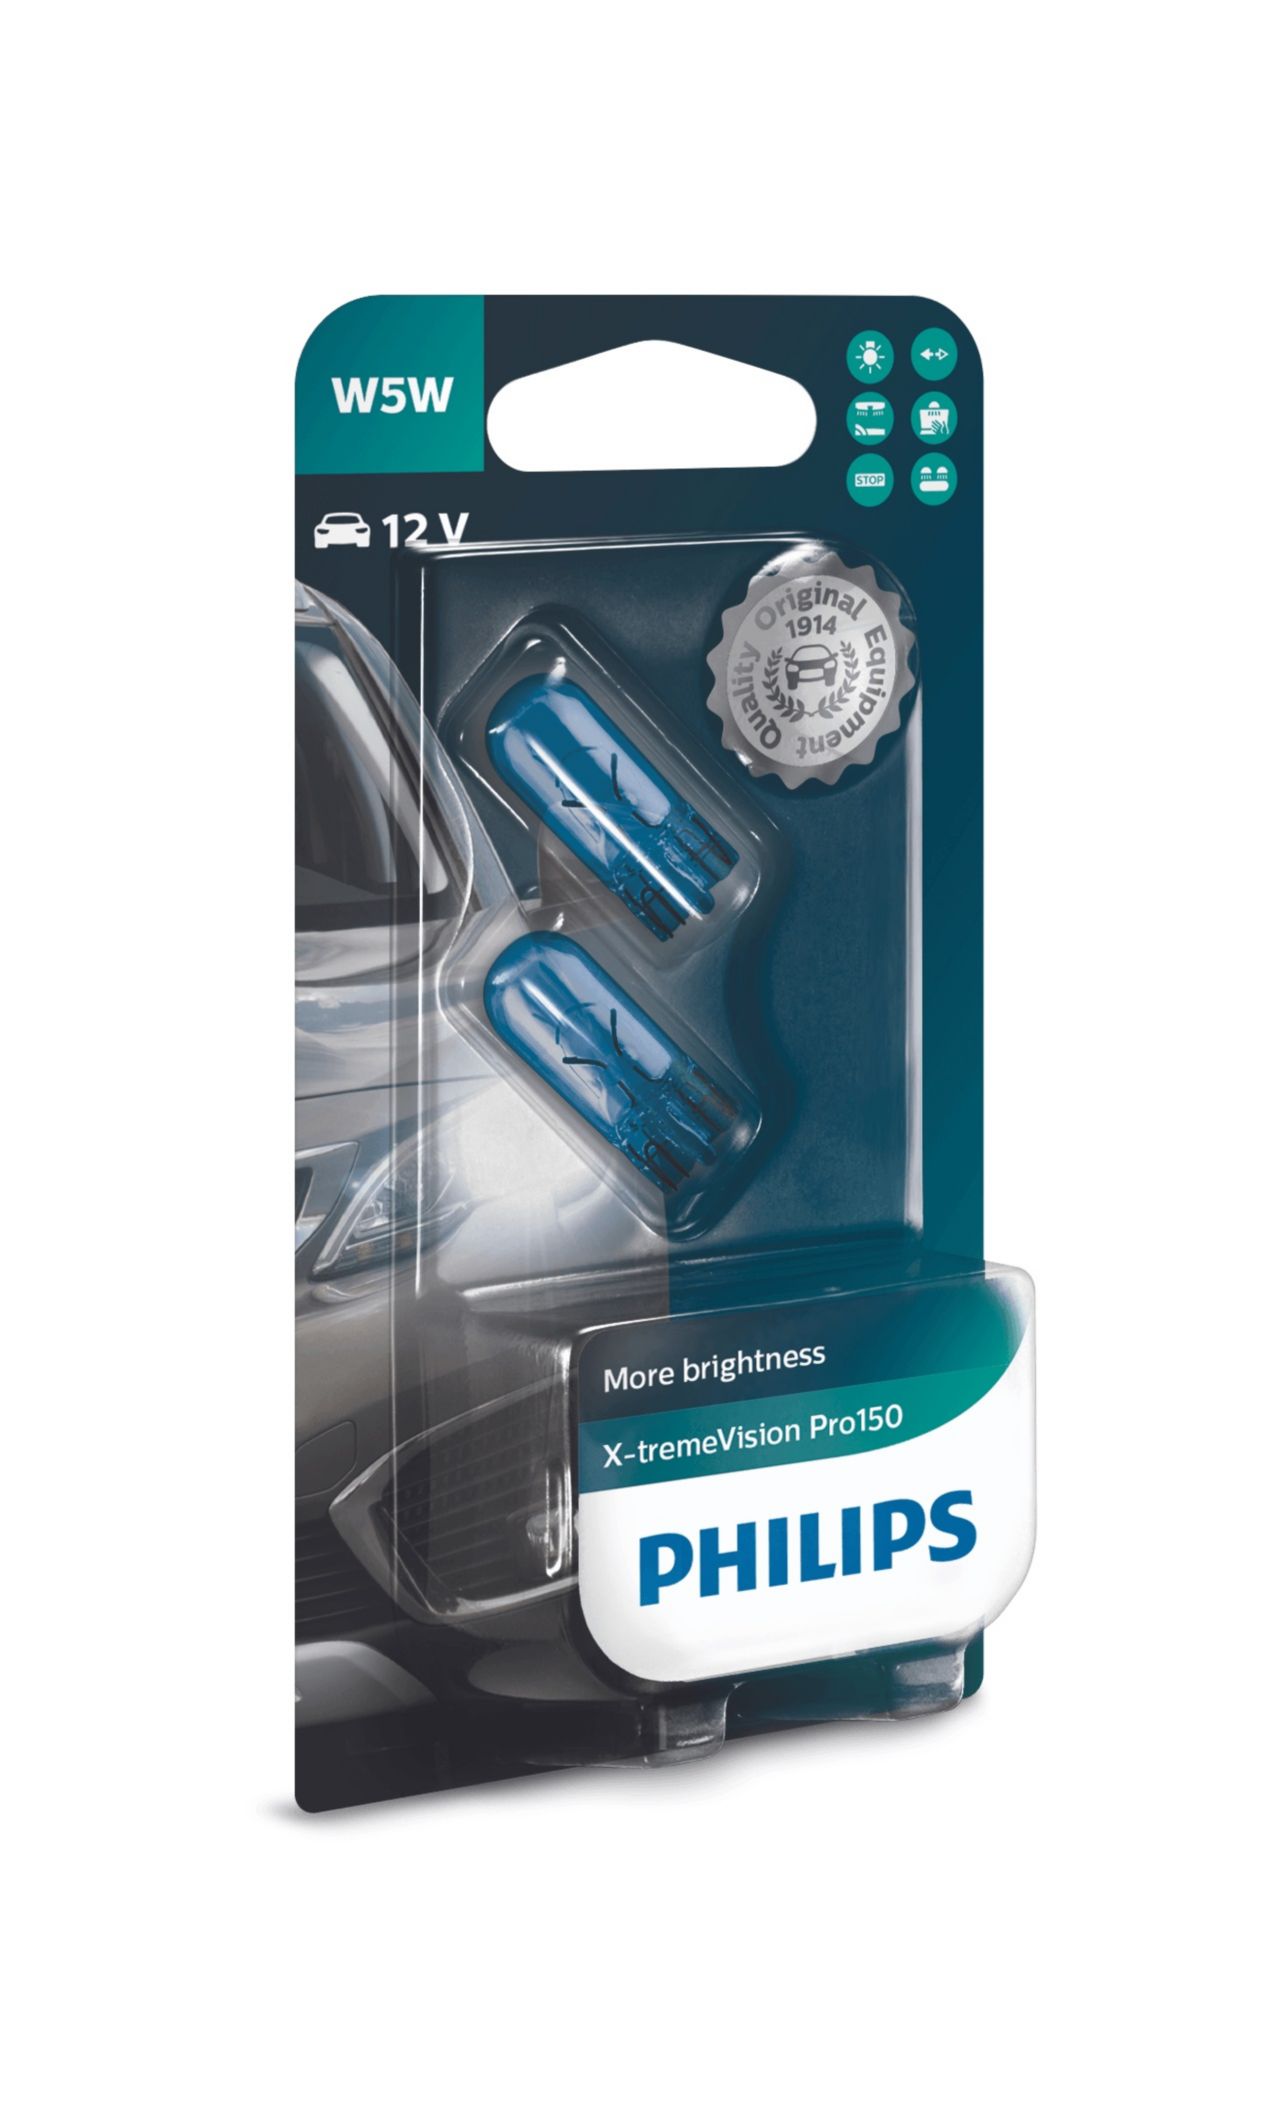 Philips W5W Glassockel 12V 5W X-tremeVision Pro150 Set - 2 Stück